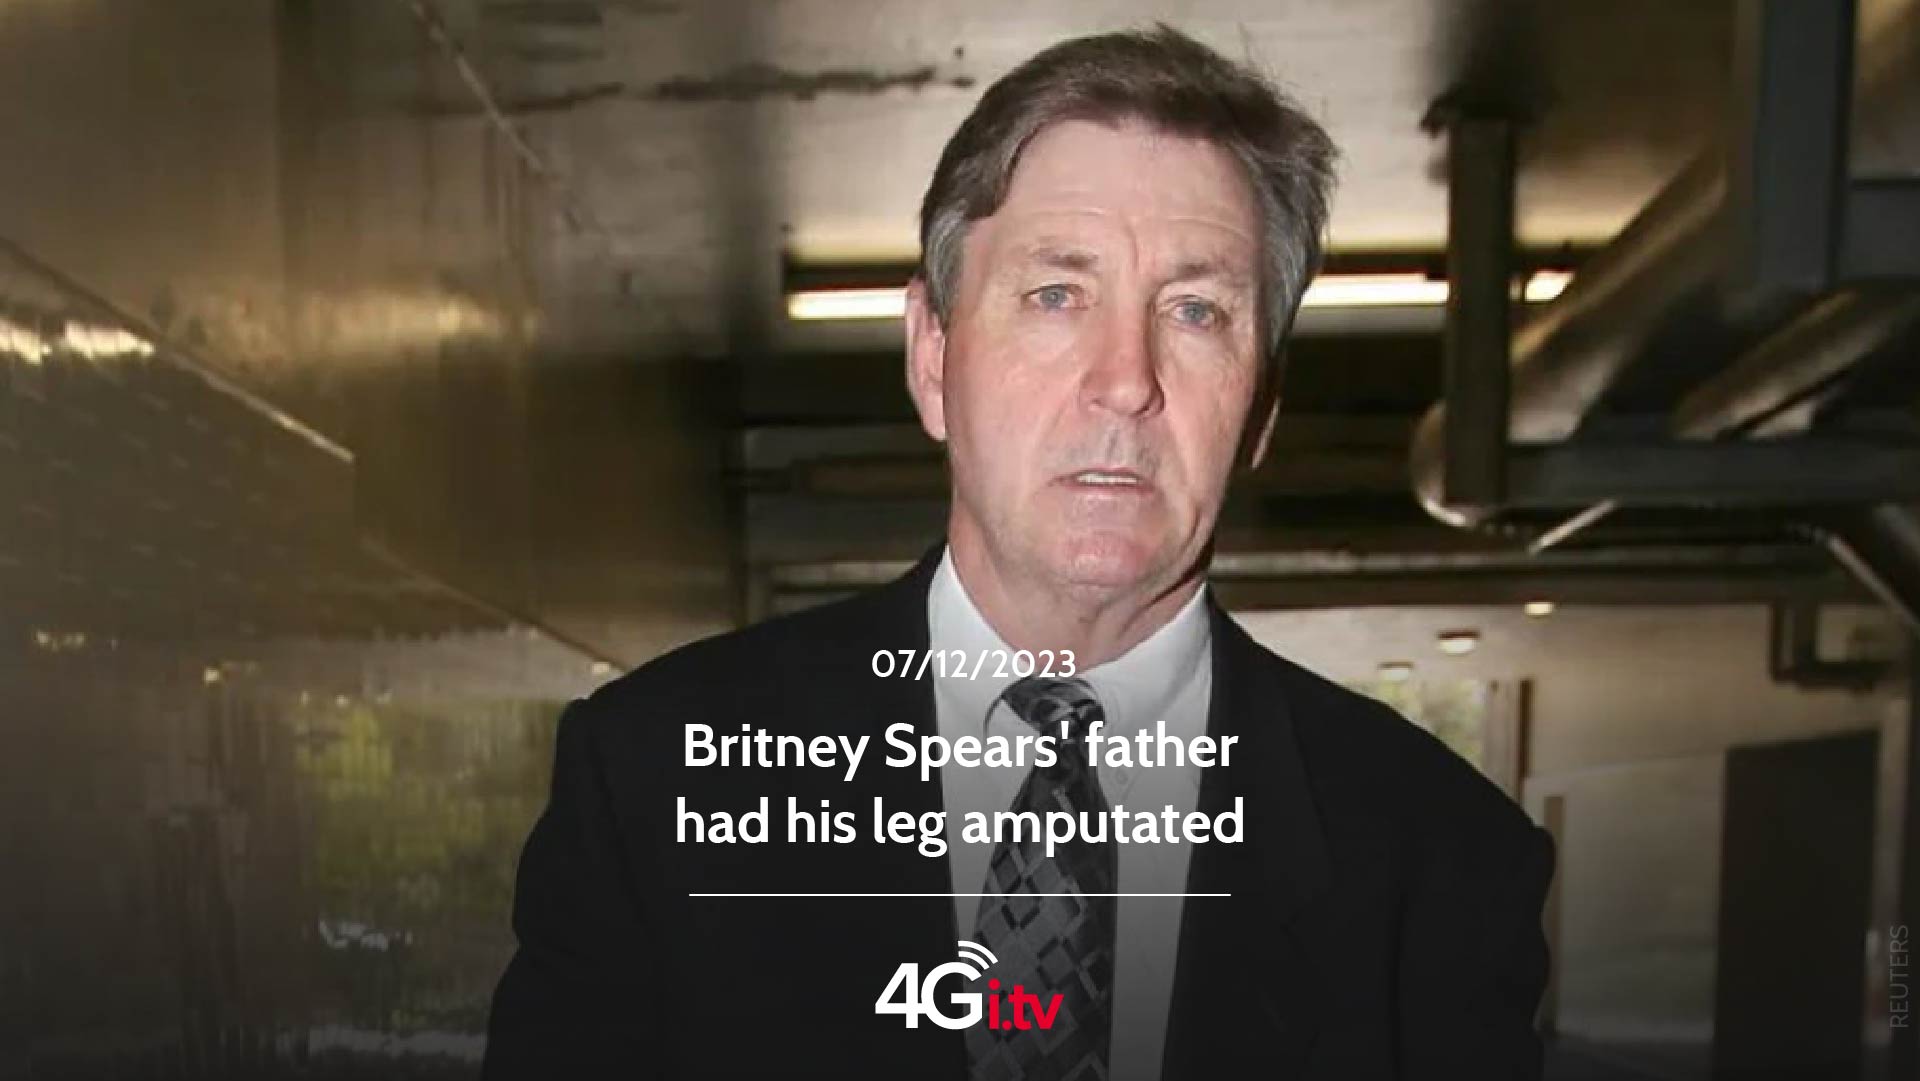 Lesen Sie mehr über den Artikel Britney Spears’ father had his leg amputated